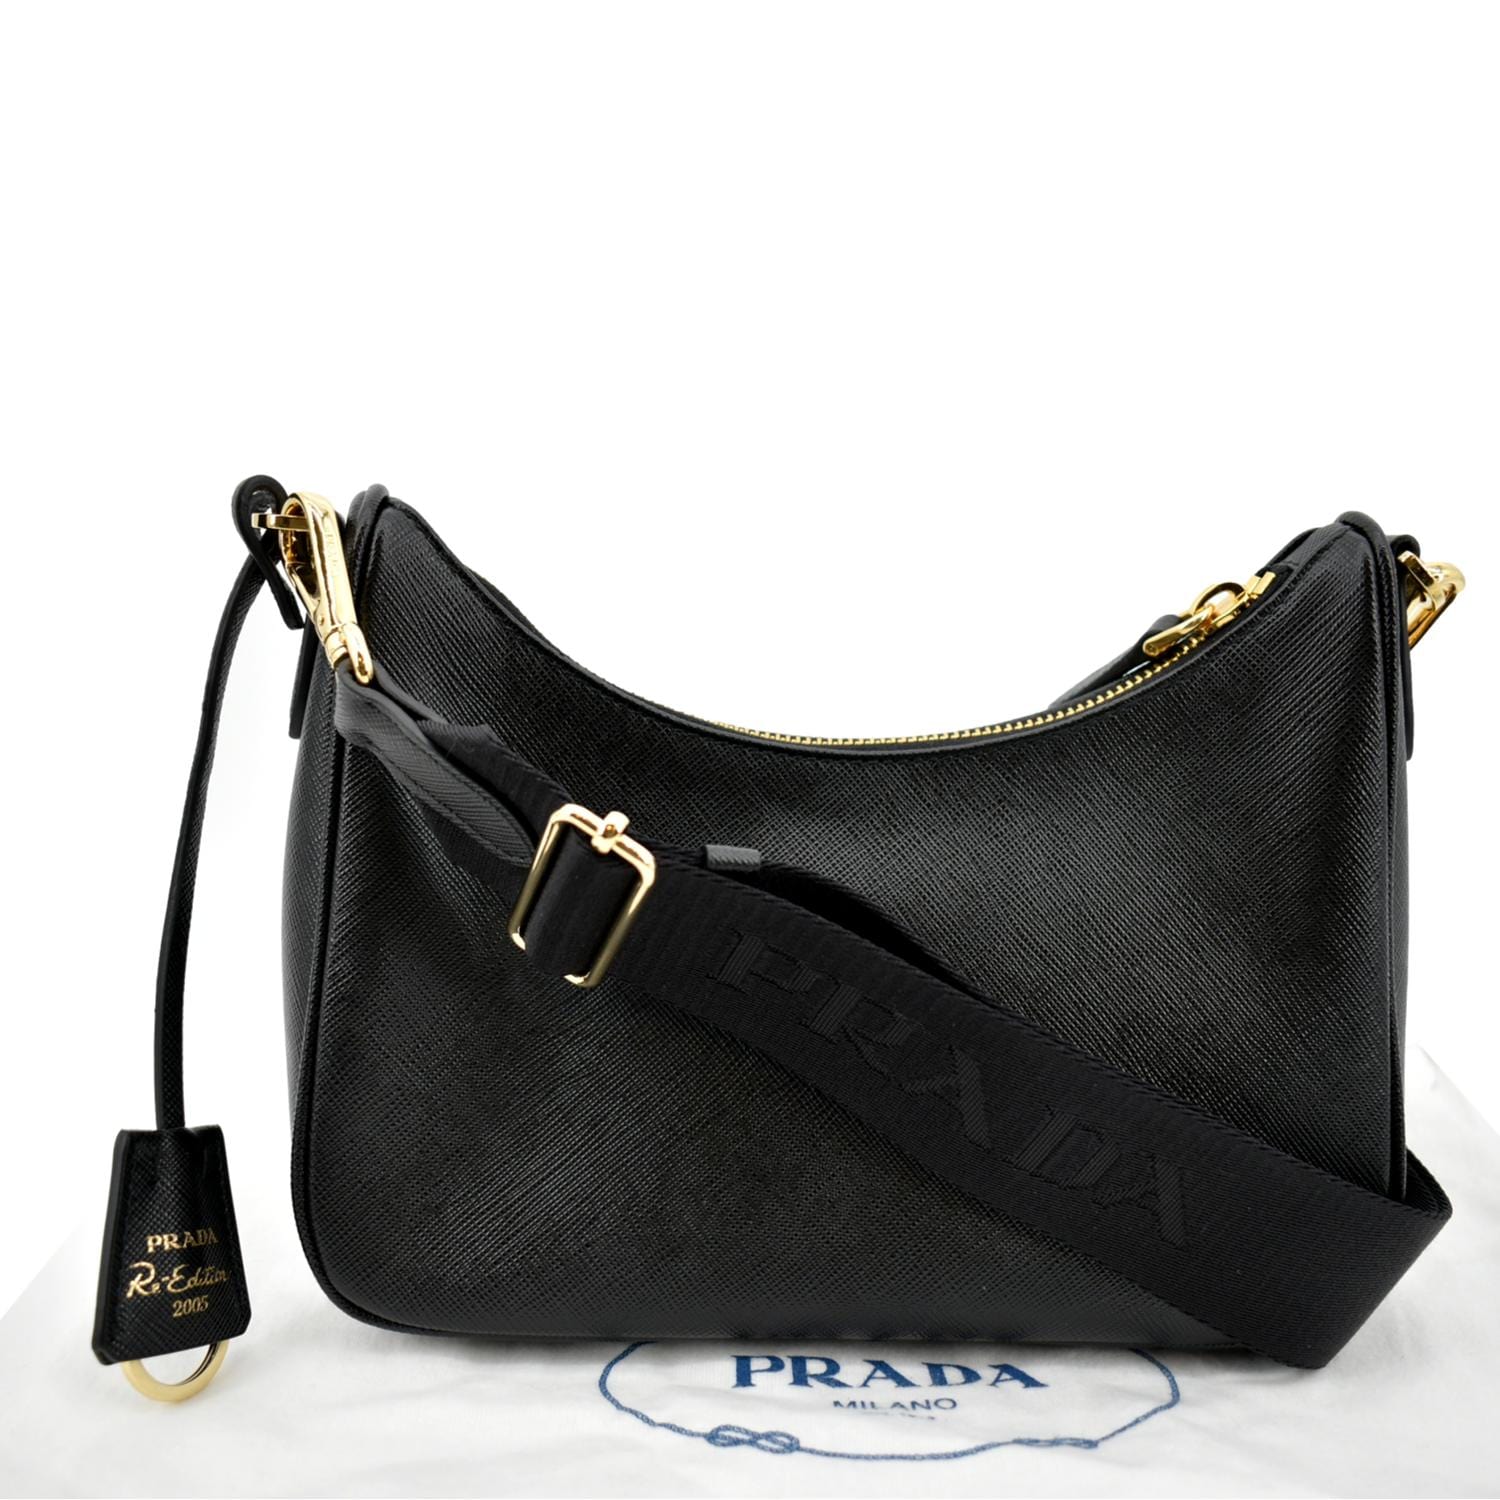 Prada Re-Edition 2005 leather shoulder bag - ShopStyle